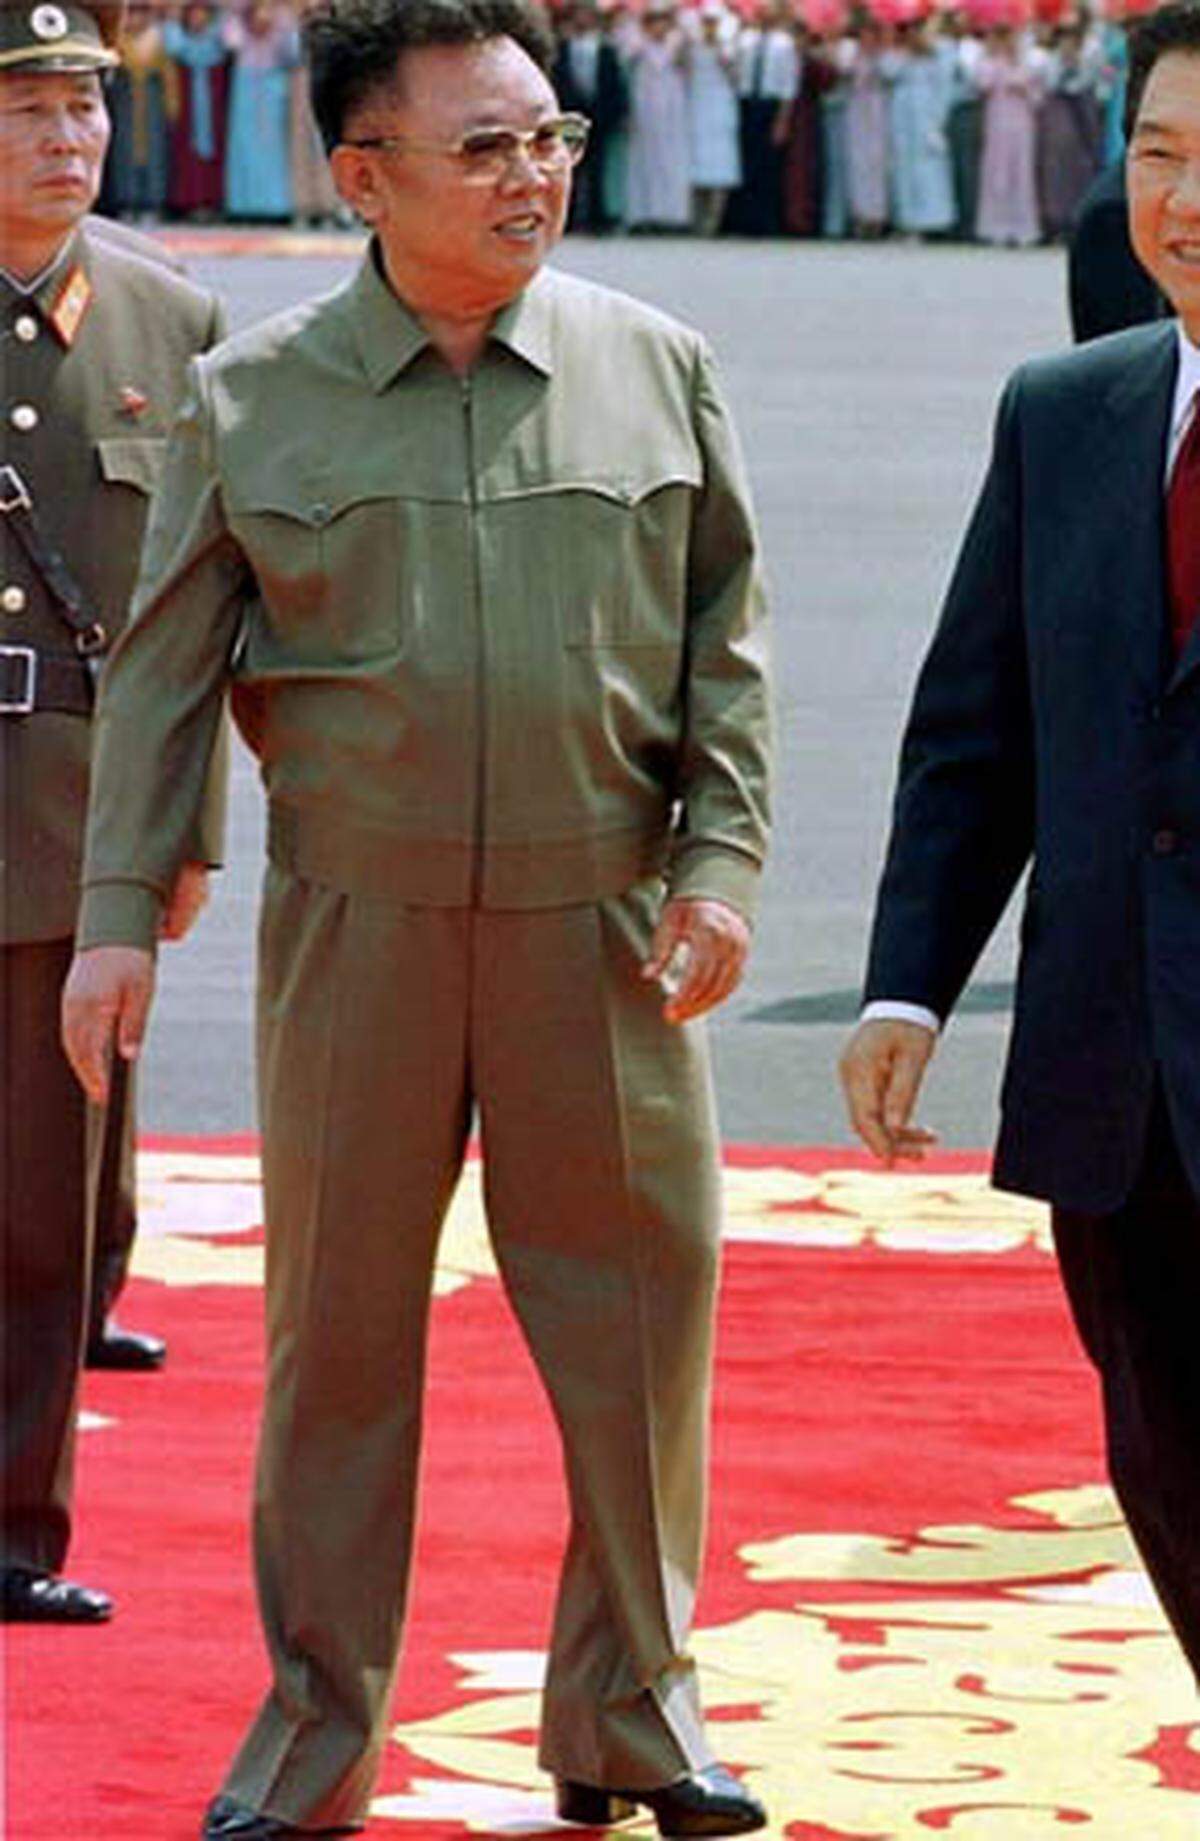 Nordkoreas Herrscher Kim Jong-Il setzt auf den Einheits-(Nicht-)Look. Der schlabbrige khakifarbene Safari-Anzug wird stets mit Plateuschuhen kombiniert. Letztere zeigen allerdings geringen Erfolg: Der damalige US-Präsident George W. Bush nannte den "Geliebten Führer" einst öffentlich einen "Pygmäen".